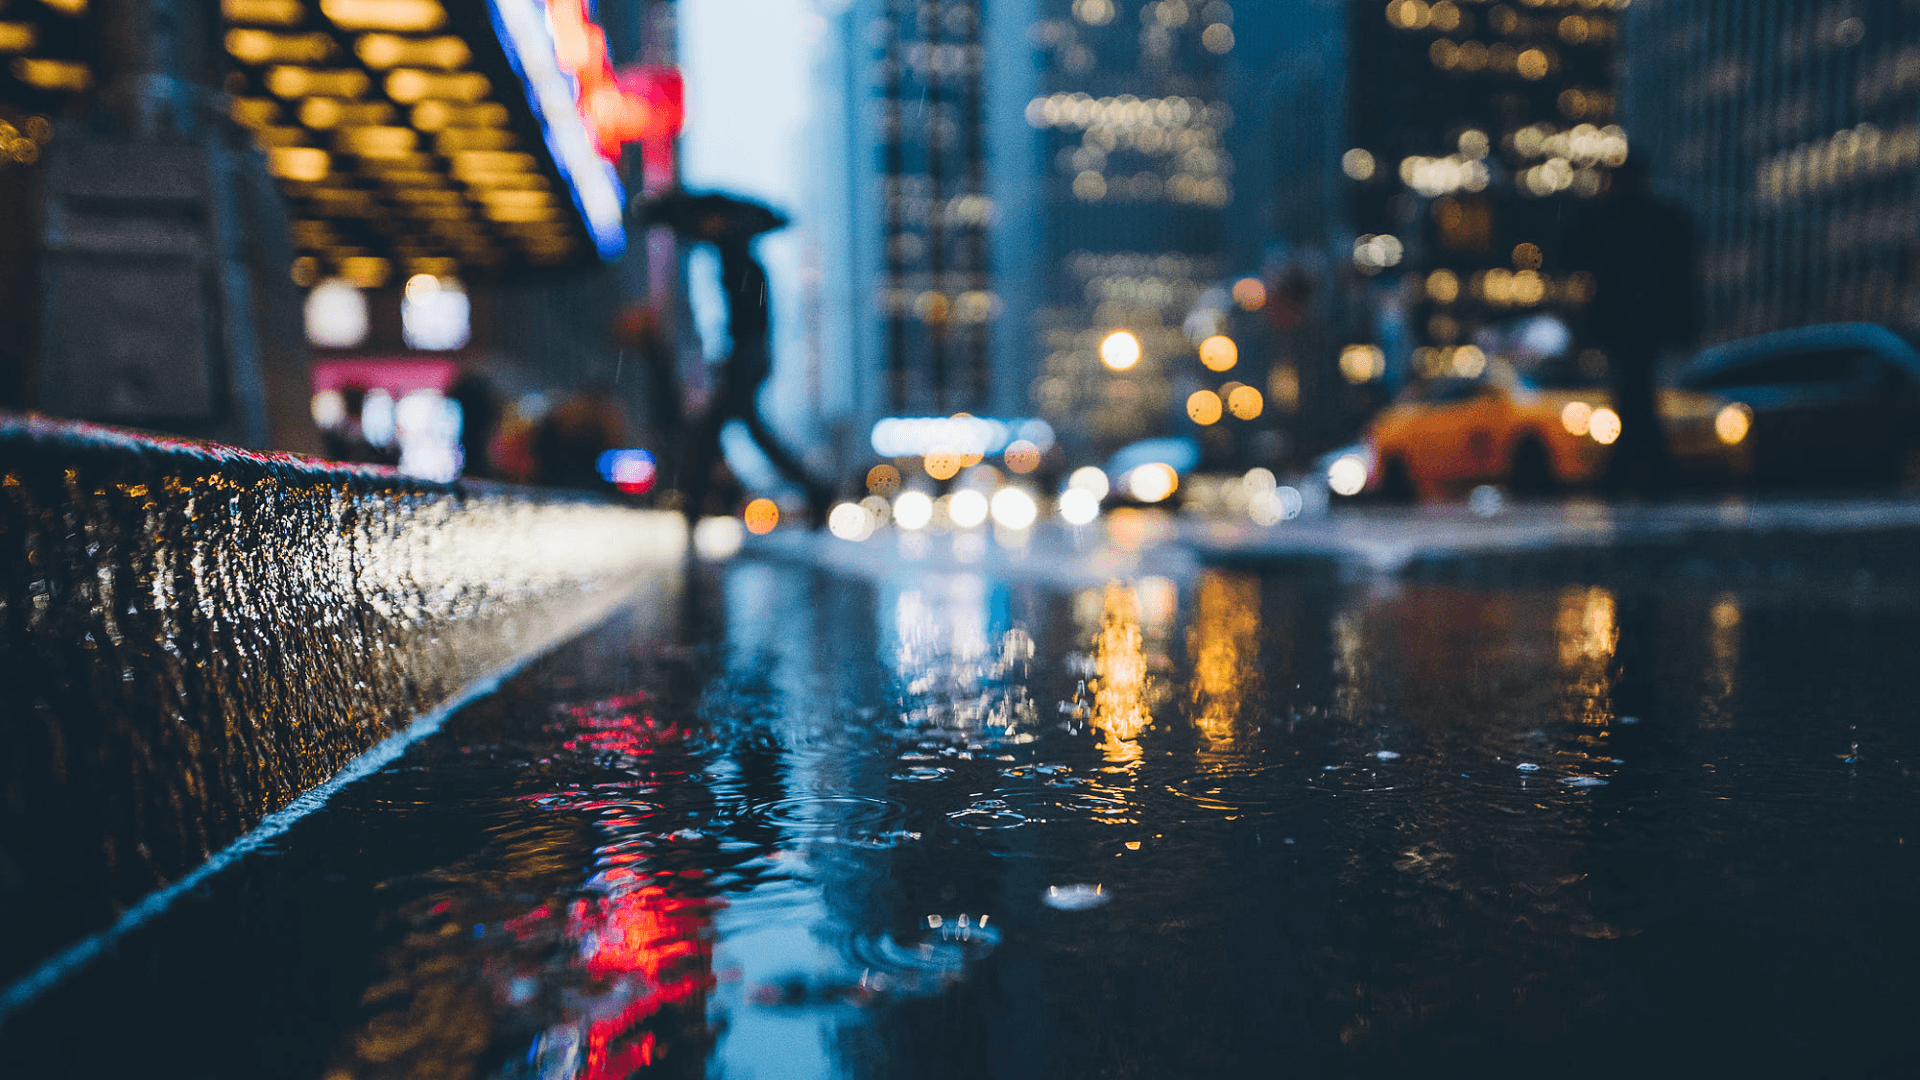 Rainy City at Night Wallpapers 4k, HD Rainy City at Night Backgrounds